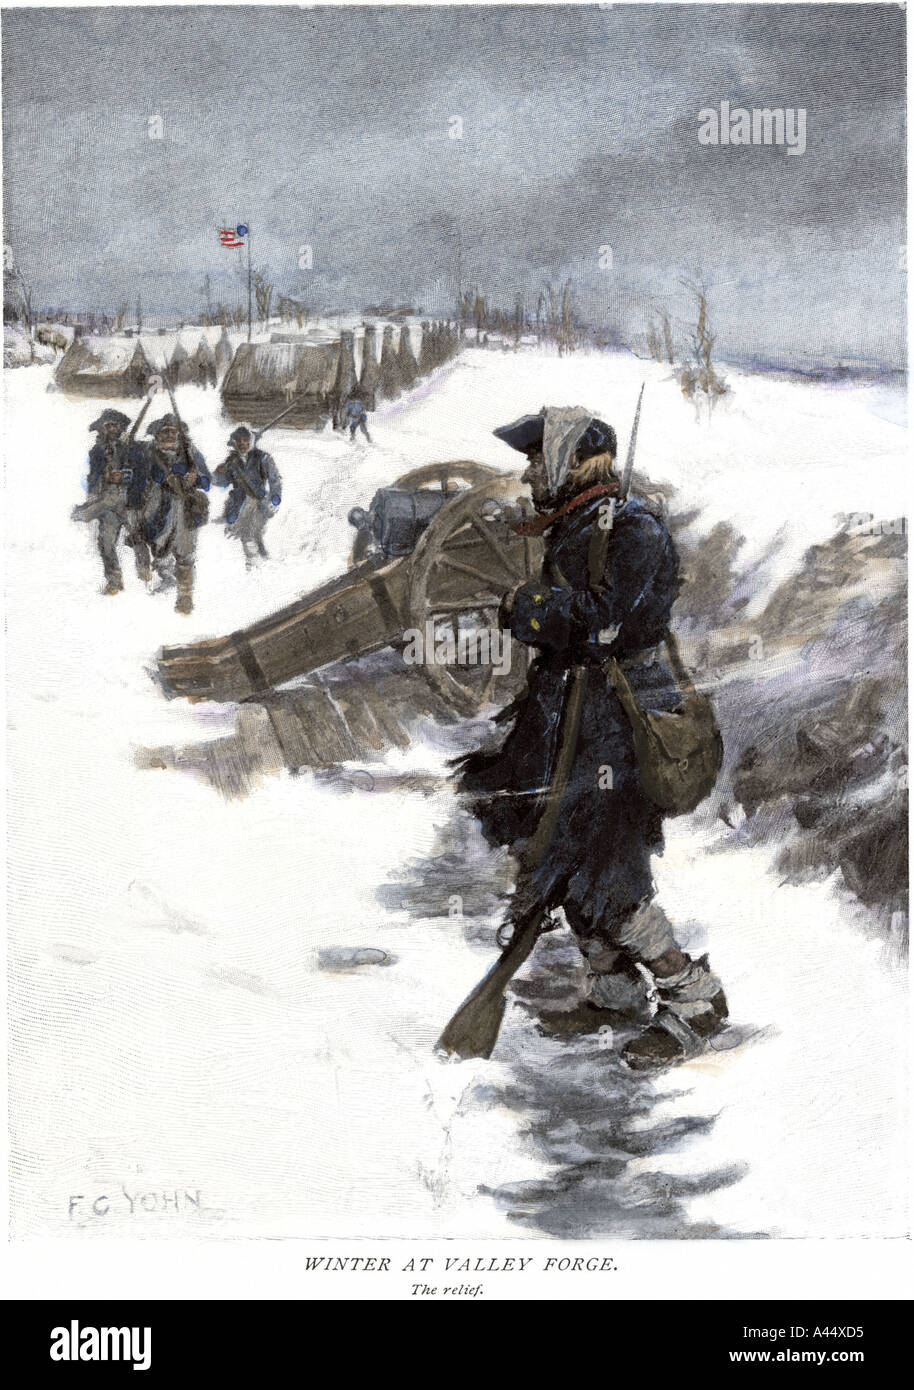 Soldat Valley Forge sur les piquets de devoir dans la neige en attendant son passage de secours de l'Indépendance américaine. À la main, gravure sur bois d'un C.F. Yohn illustration Banque D'Images